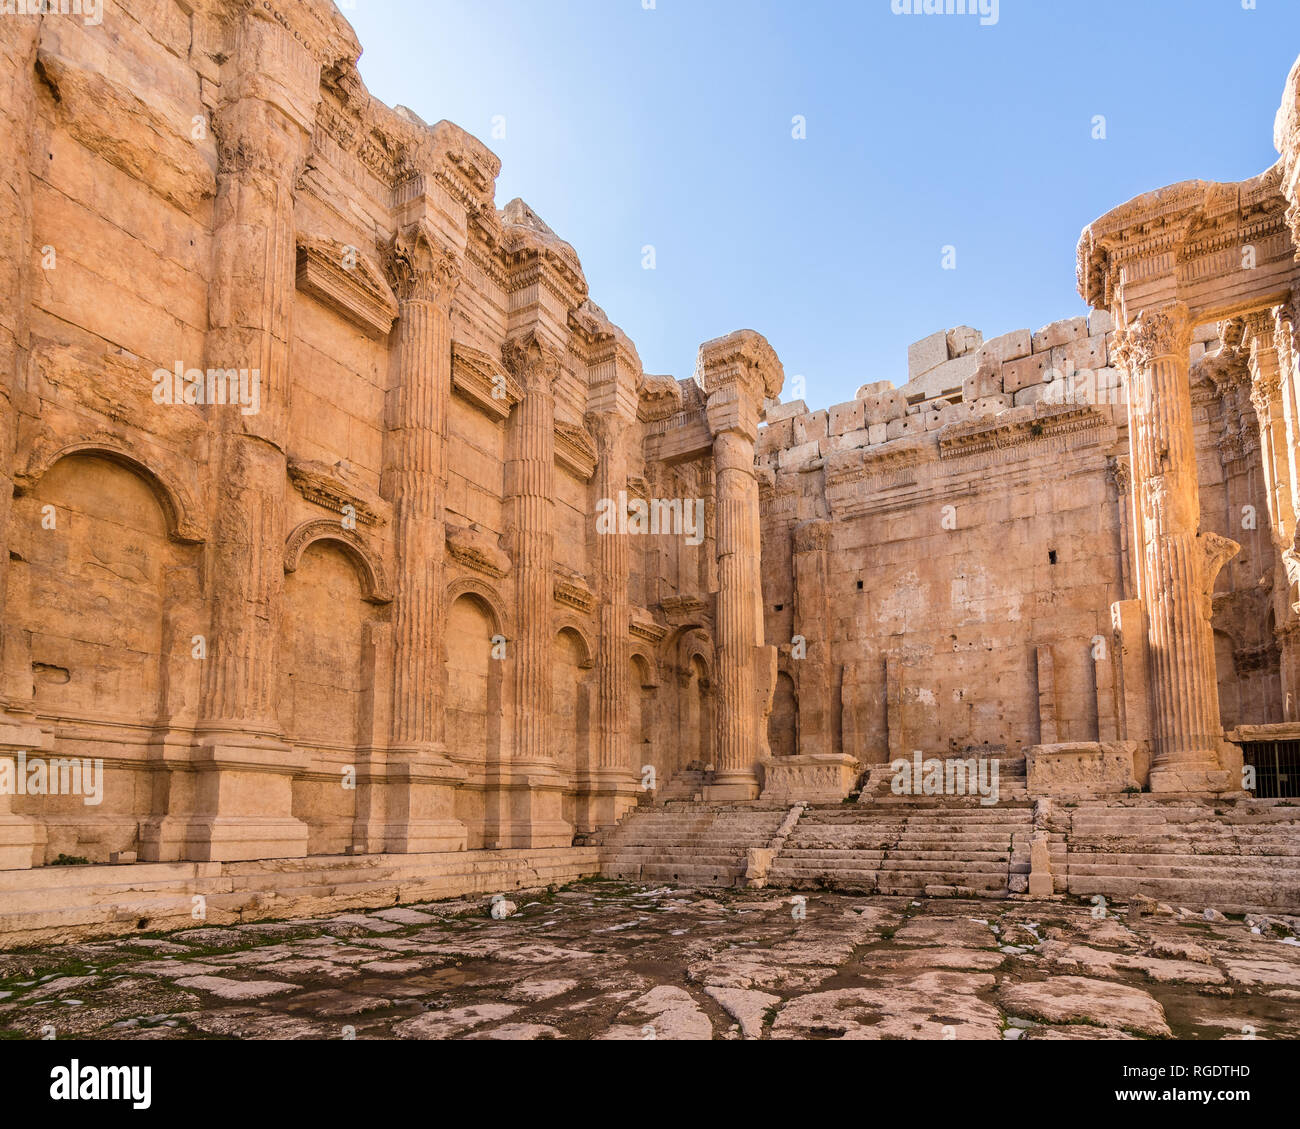 El interior y el santuario del templo de Baco, Heliópolis ruinas romanas, Baalbek, Líbano Foto de stock